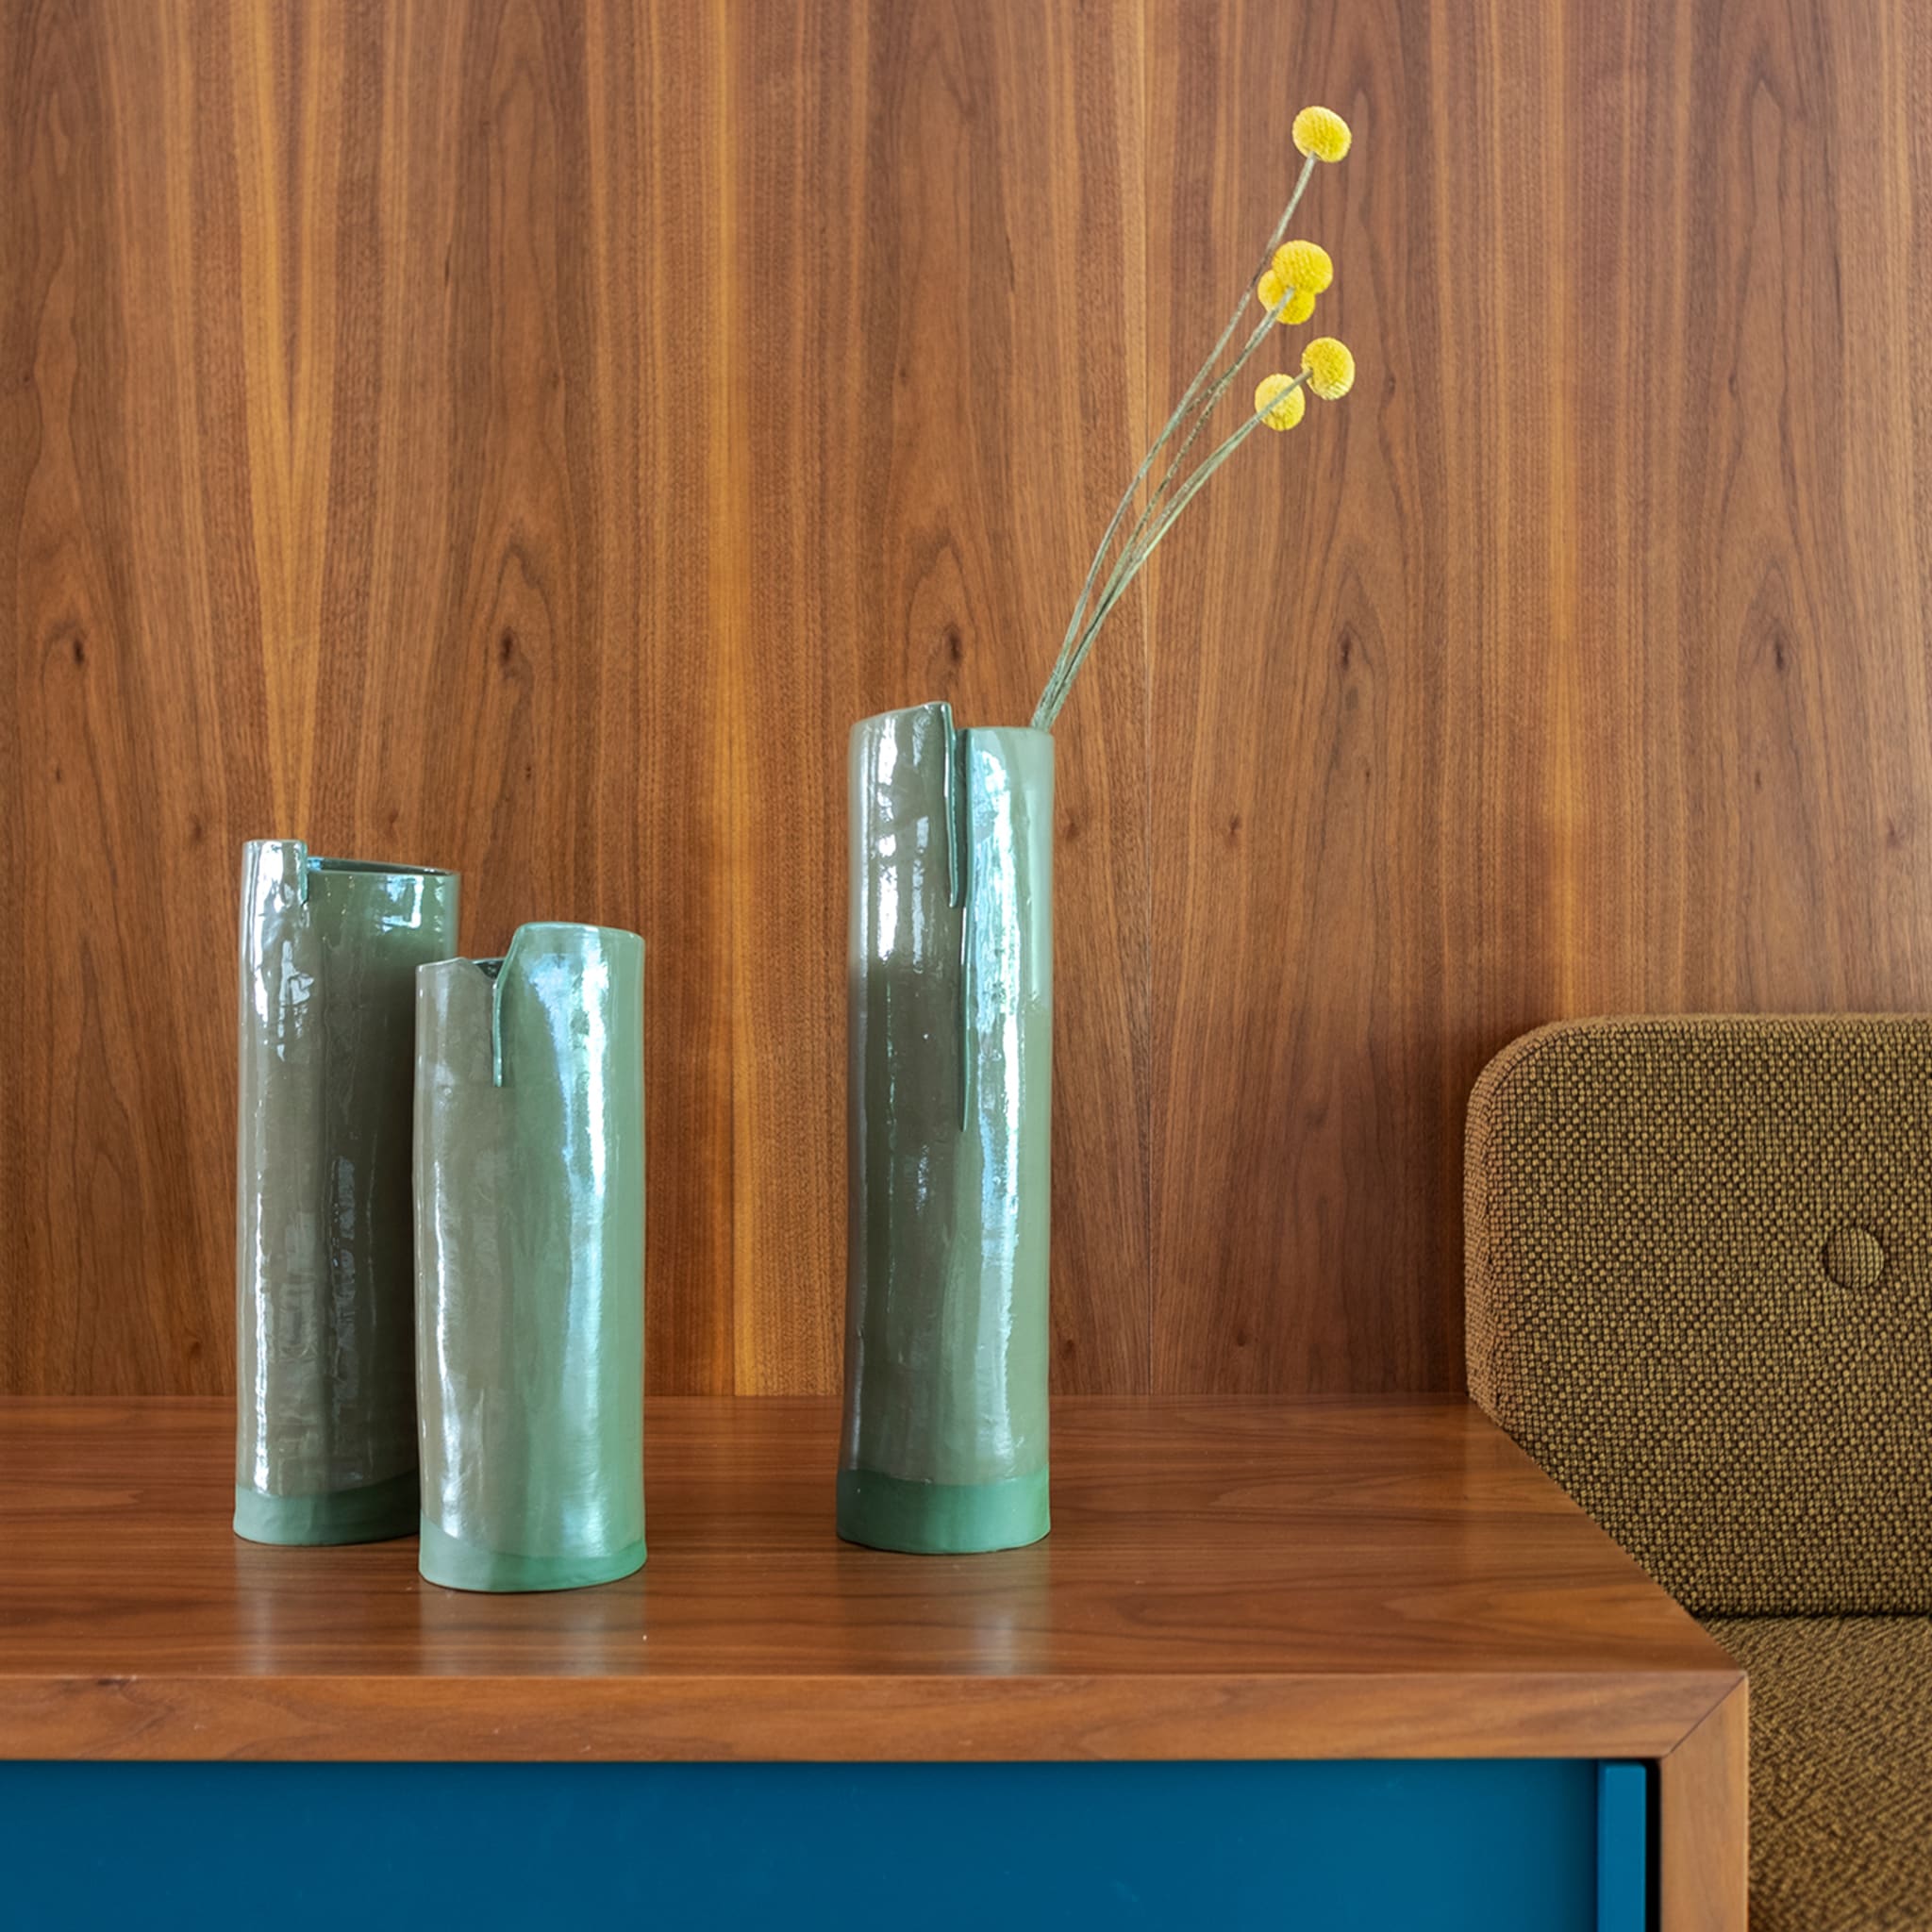 Gli Steli Set of 3 Green Vases - Alternative view 1